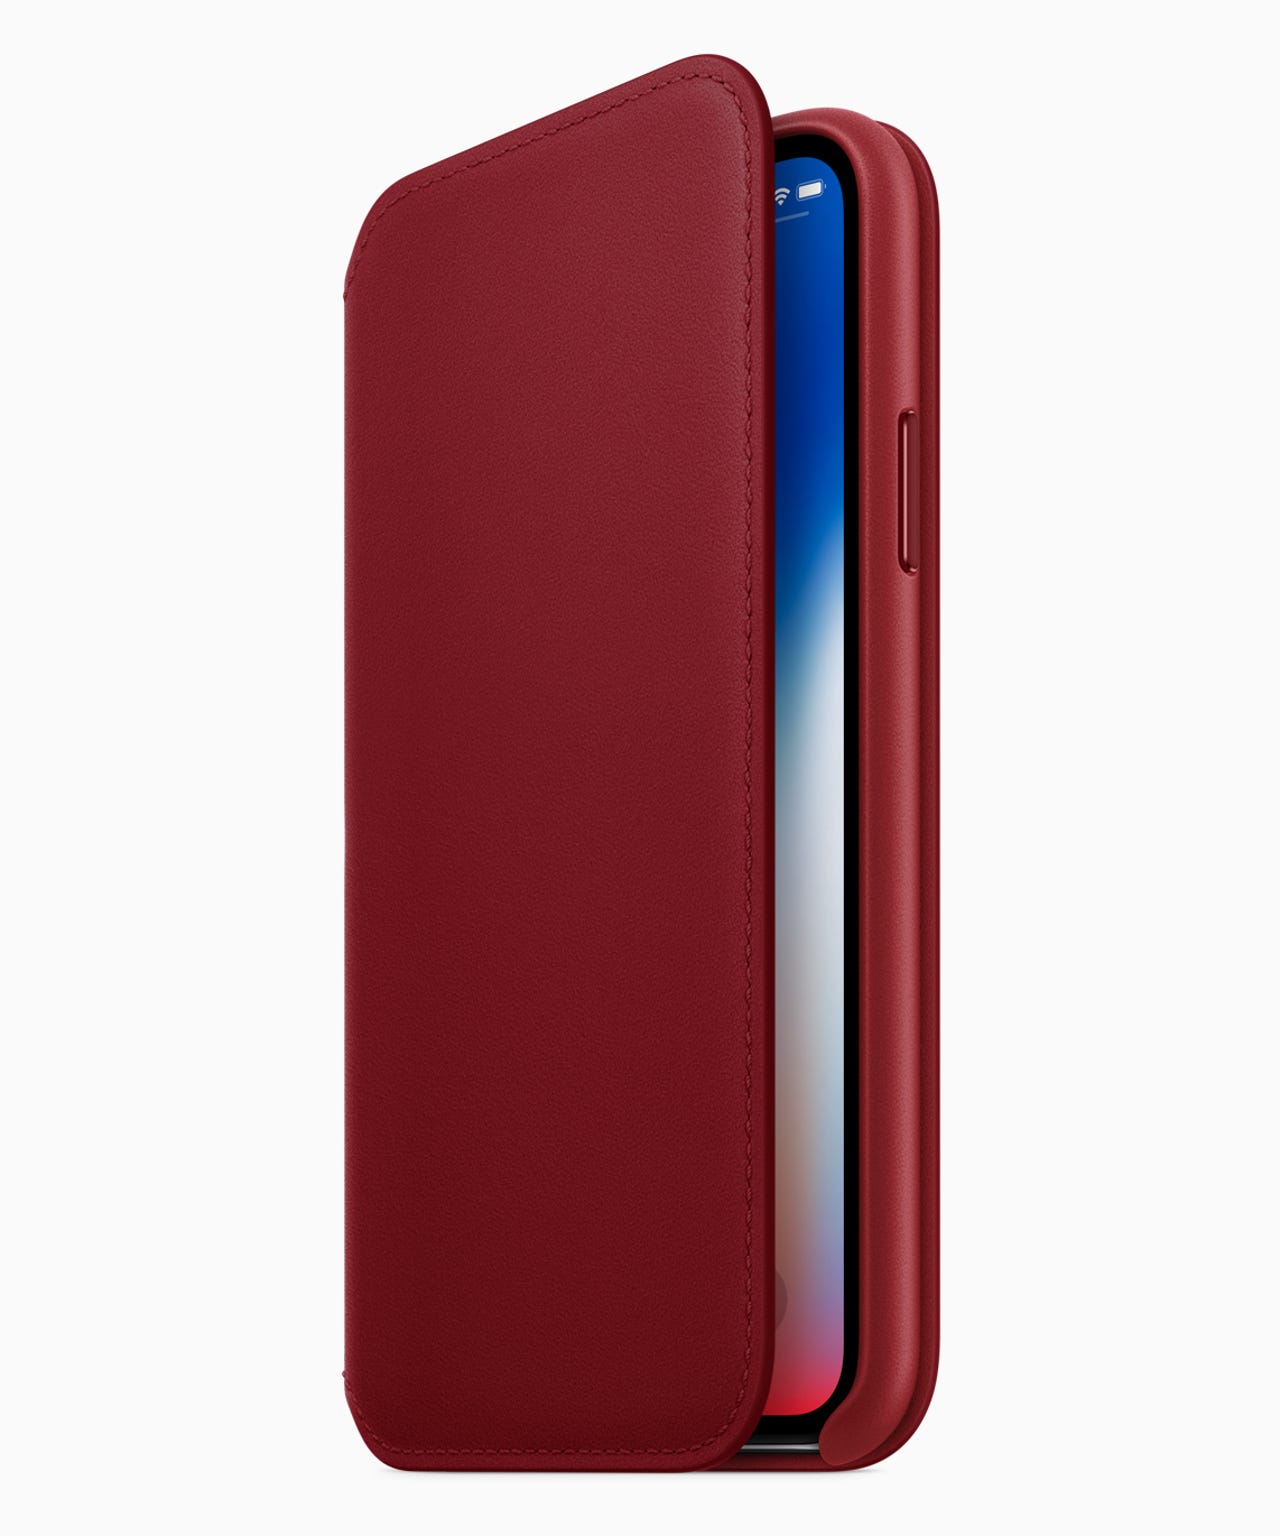 iphone8-iphone8plus-product-redfolio-case041018.jpg